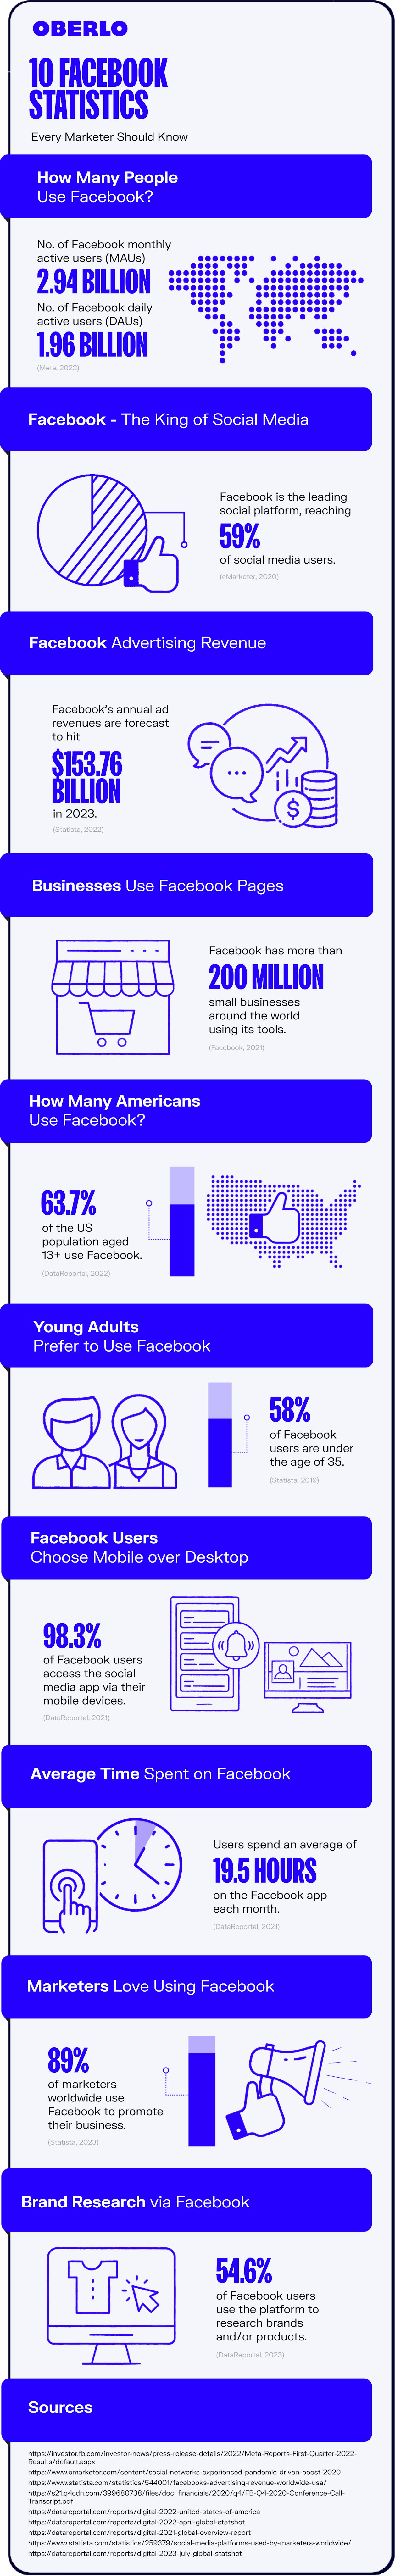 facebook statistics full infographic